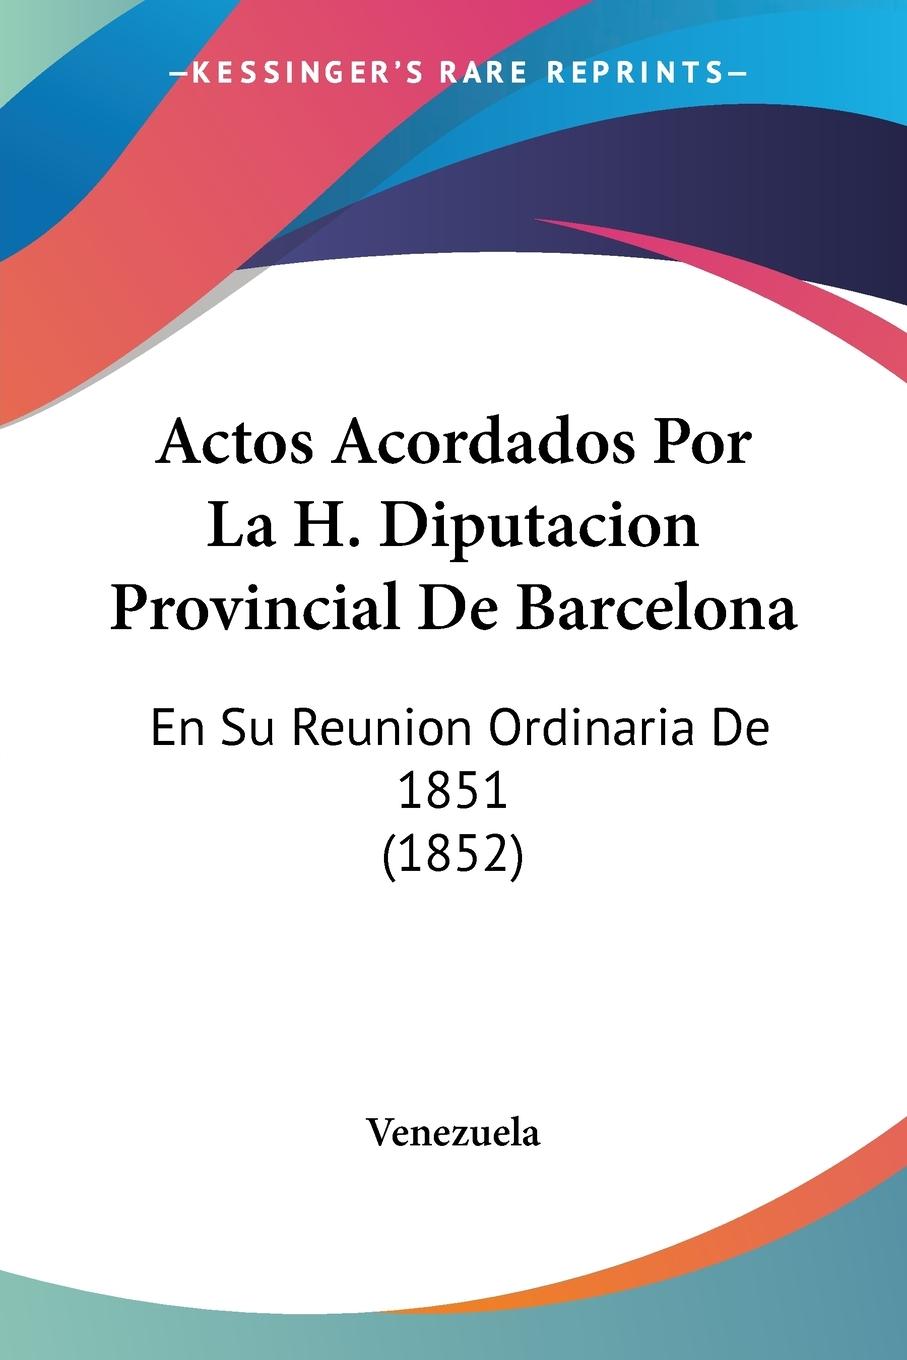 Actos Acordados Por La H. Diputacion Provincial De Barcelona - Venezuela